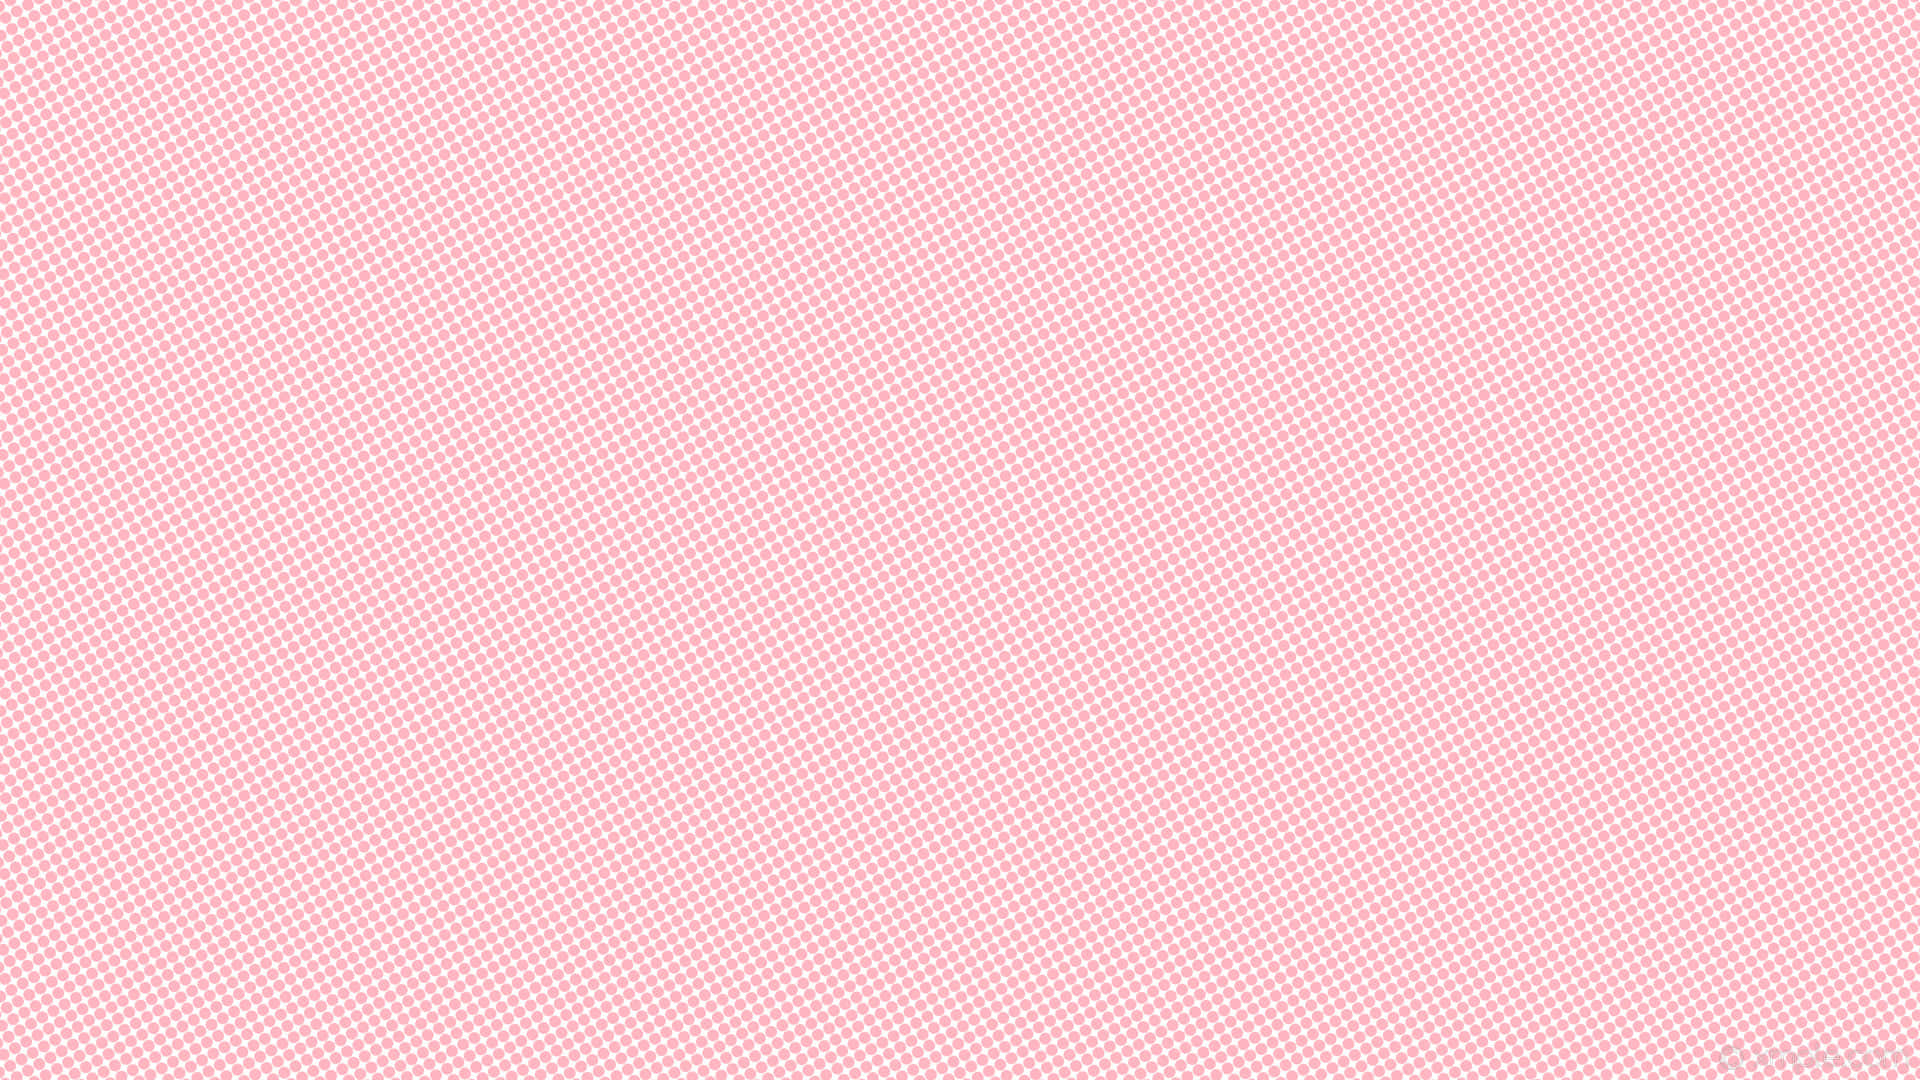 Bức ảnh trên nền tường màu hồng đậm chắc chắn sẽ khiến bạn đắm mình trong một không gian ấm áp, ngọt ngào, tràn đầy niềm vui và hạnh phúc. Hãy để màu hồng sặc sỡ phủ đầy những moment đáng nhớ trong cuộc sống của bạn.